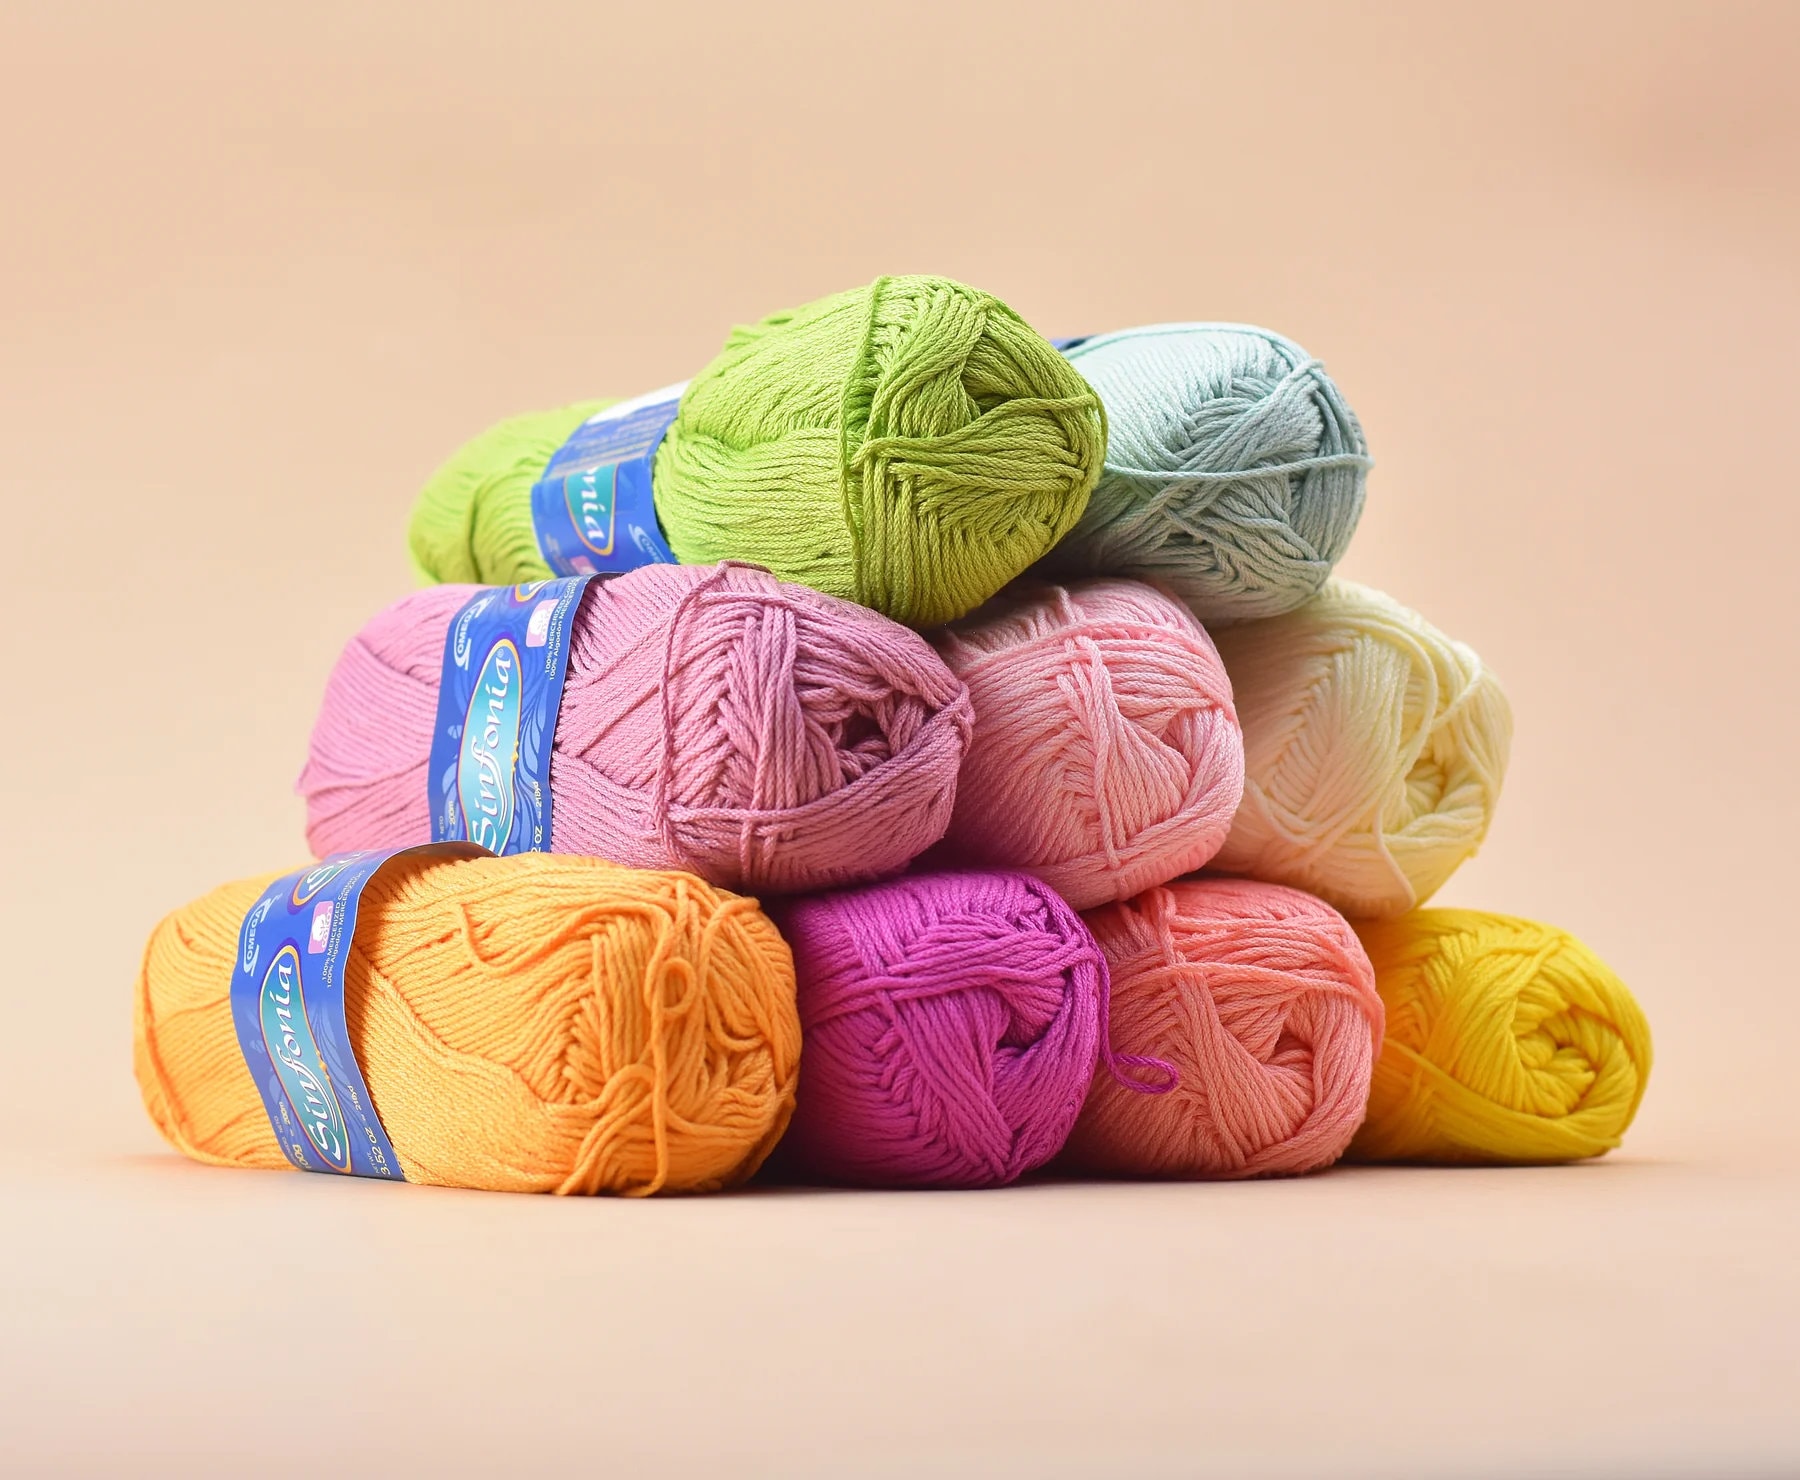 Omega Cotton Yarn, Soft Sinfonia Cotton Yarn, Dk Yarn, Knitting Yarn, –  Cutie Outfits by Belle